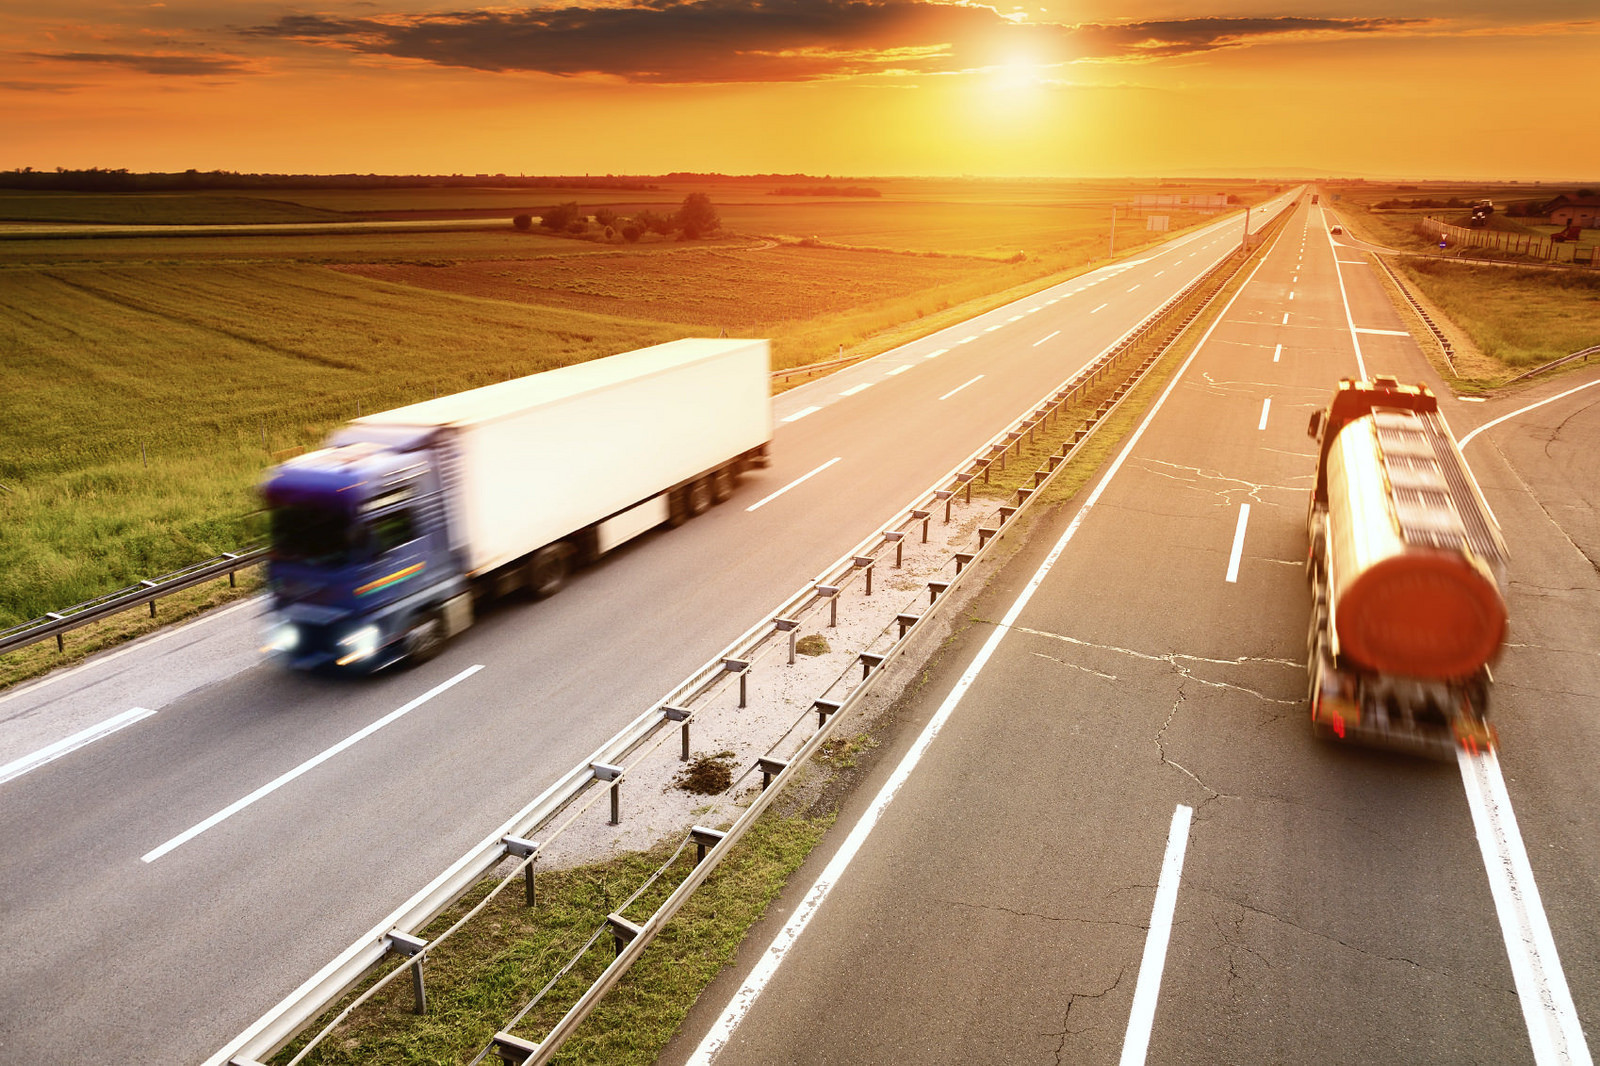 Aprobada la reparación de camiones en carretera: ¿Cómo afectará a la planificación de rutas?